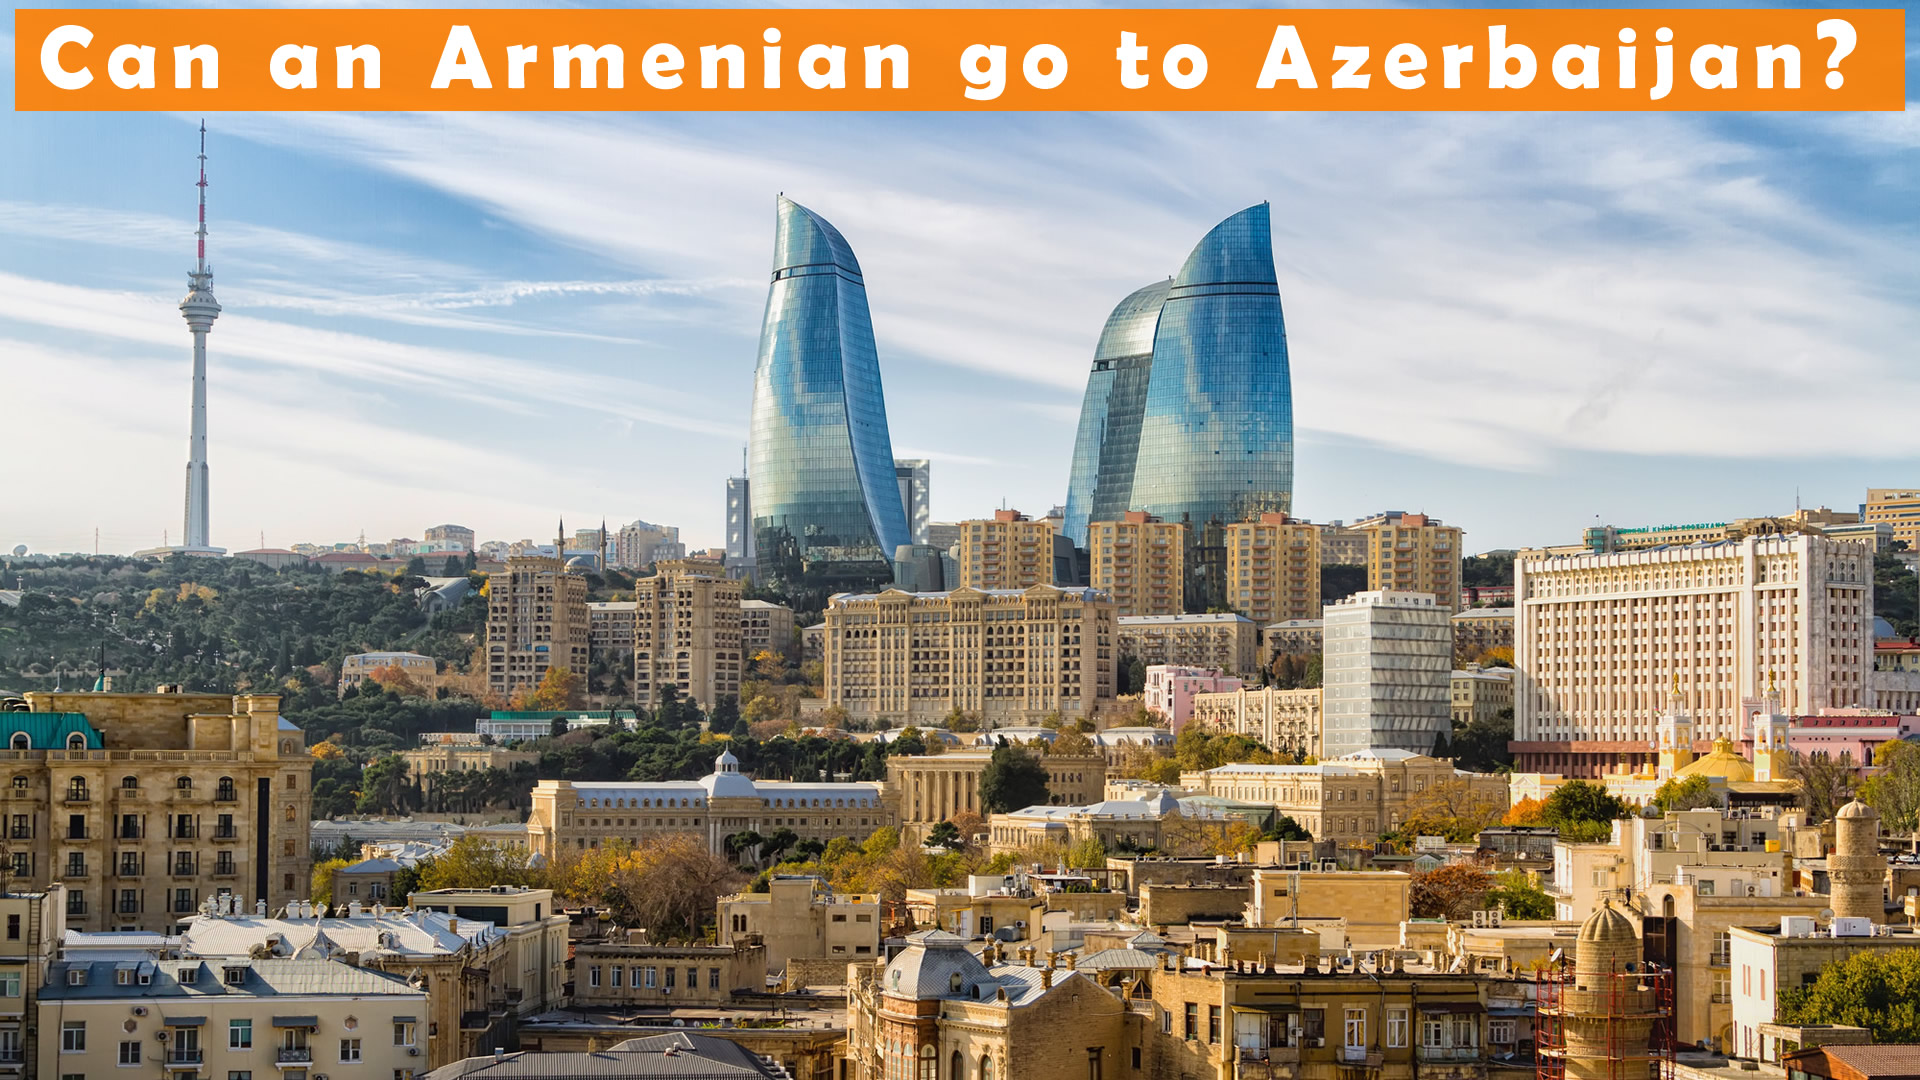 peut il armenien go to azerbaidjan